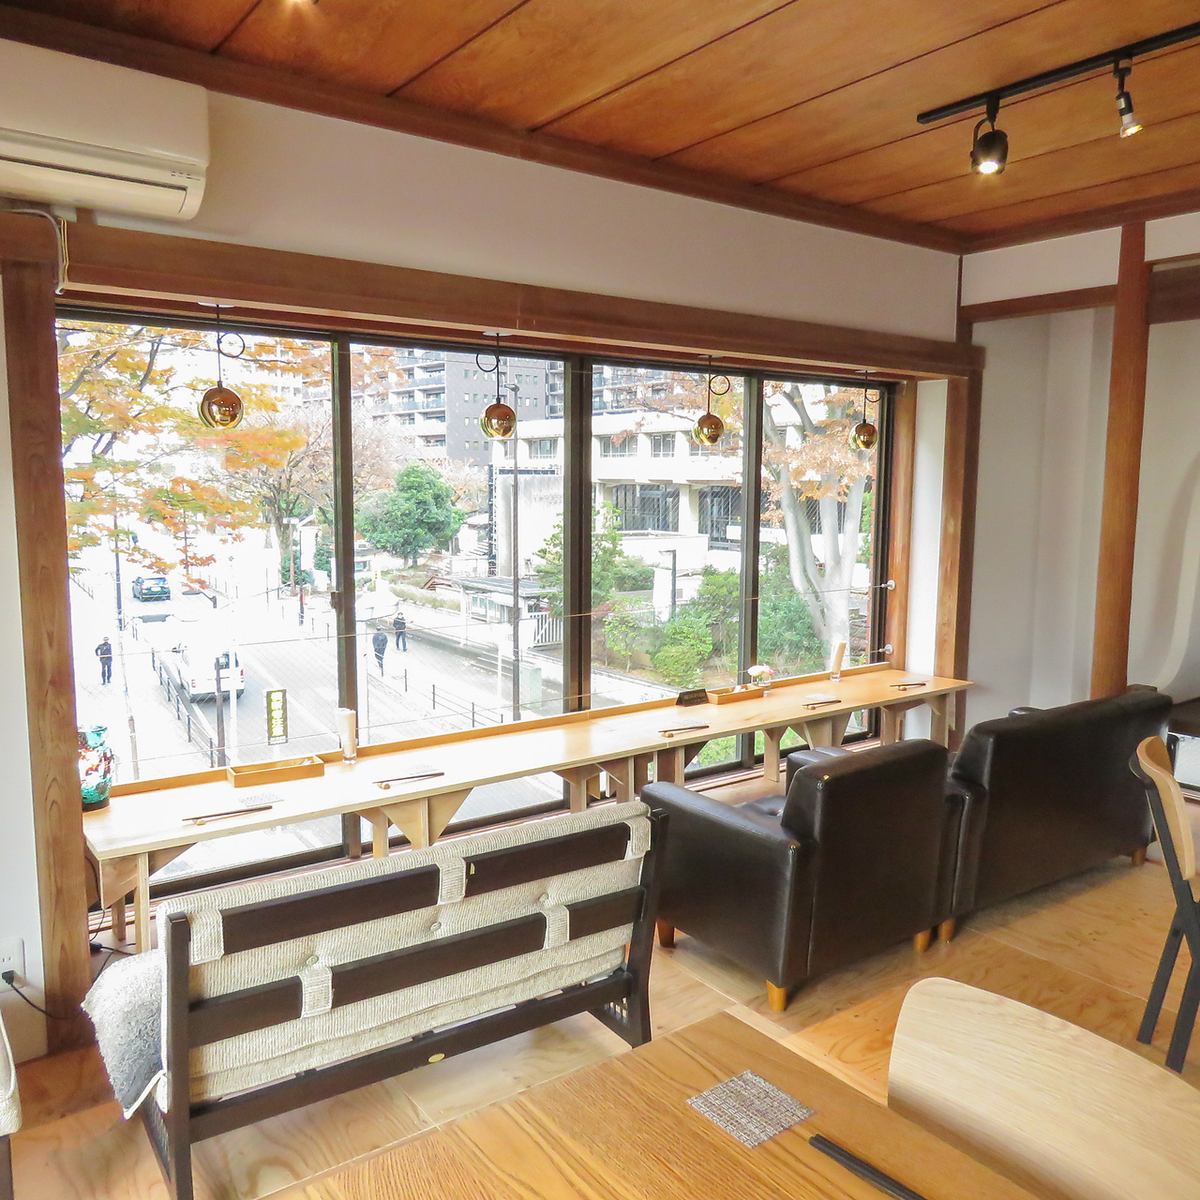 【2席限定】“靠窗座位假日午餐（11:00-16:00）”3,500日元